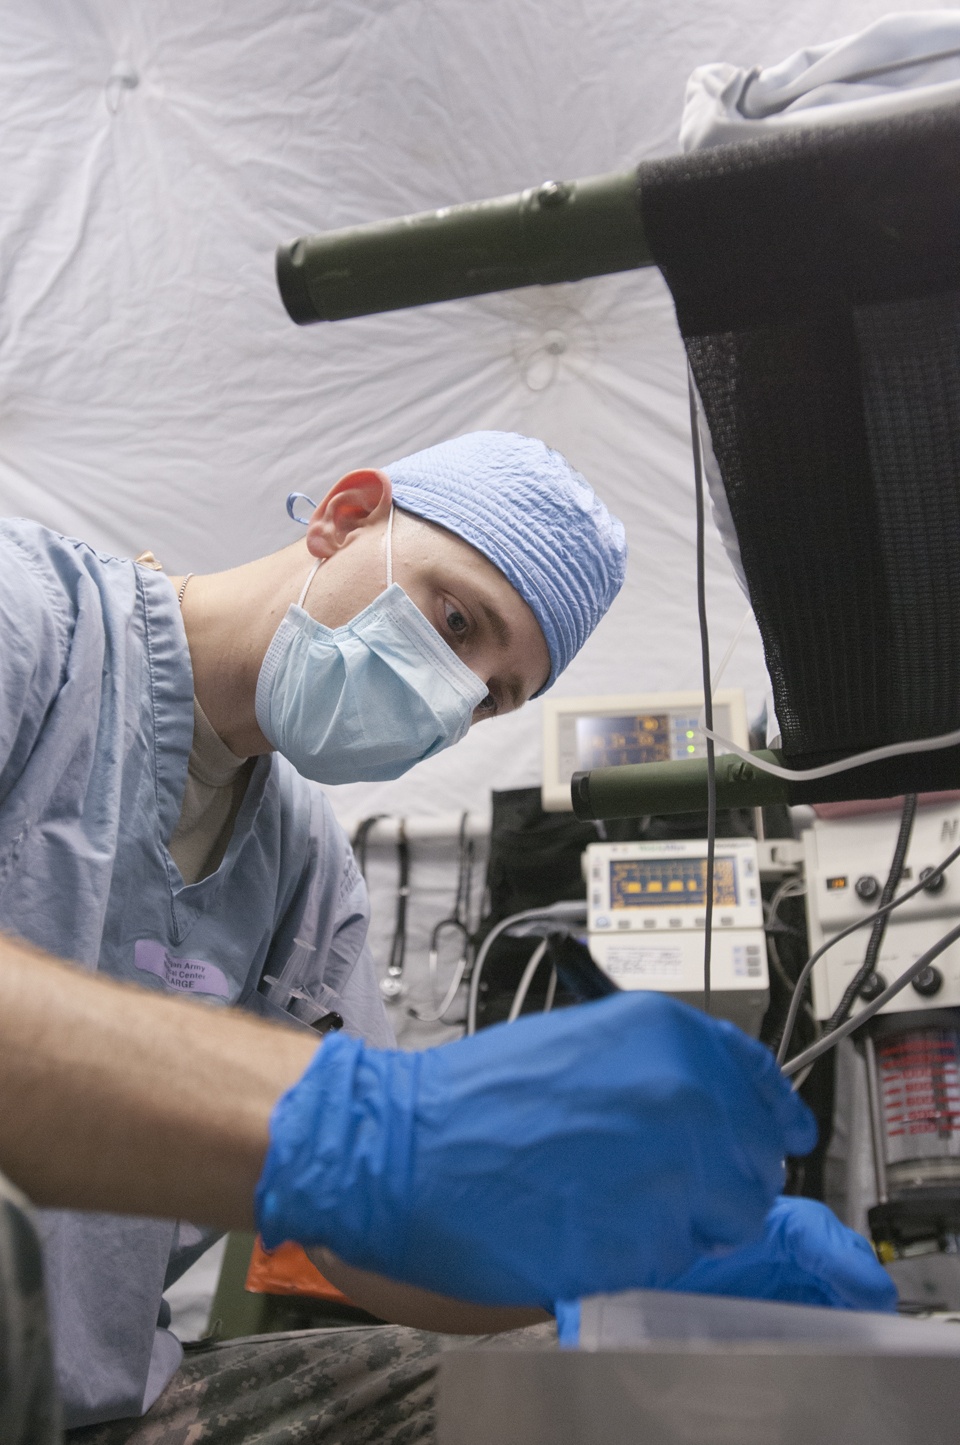 FST surgeons sharpen their skills